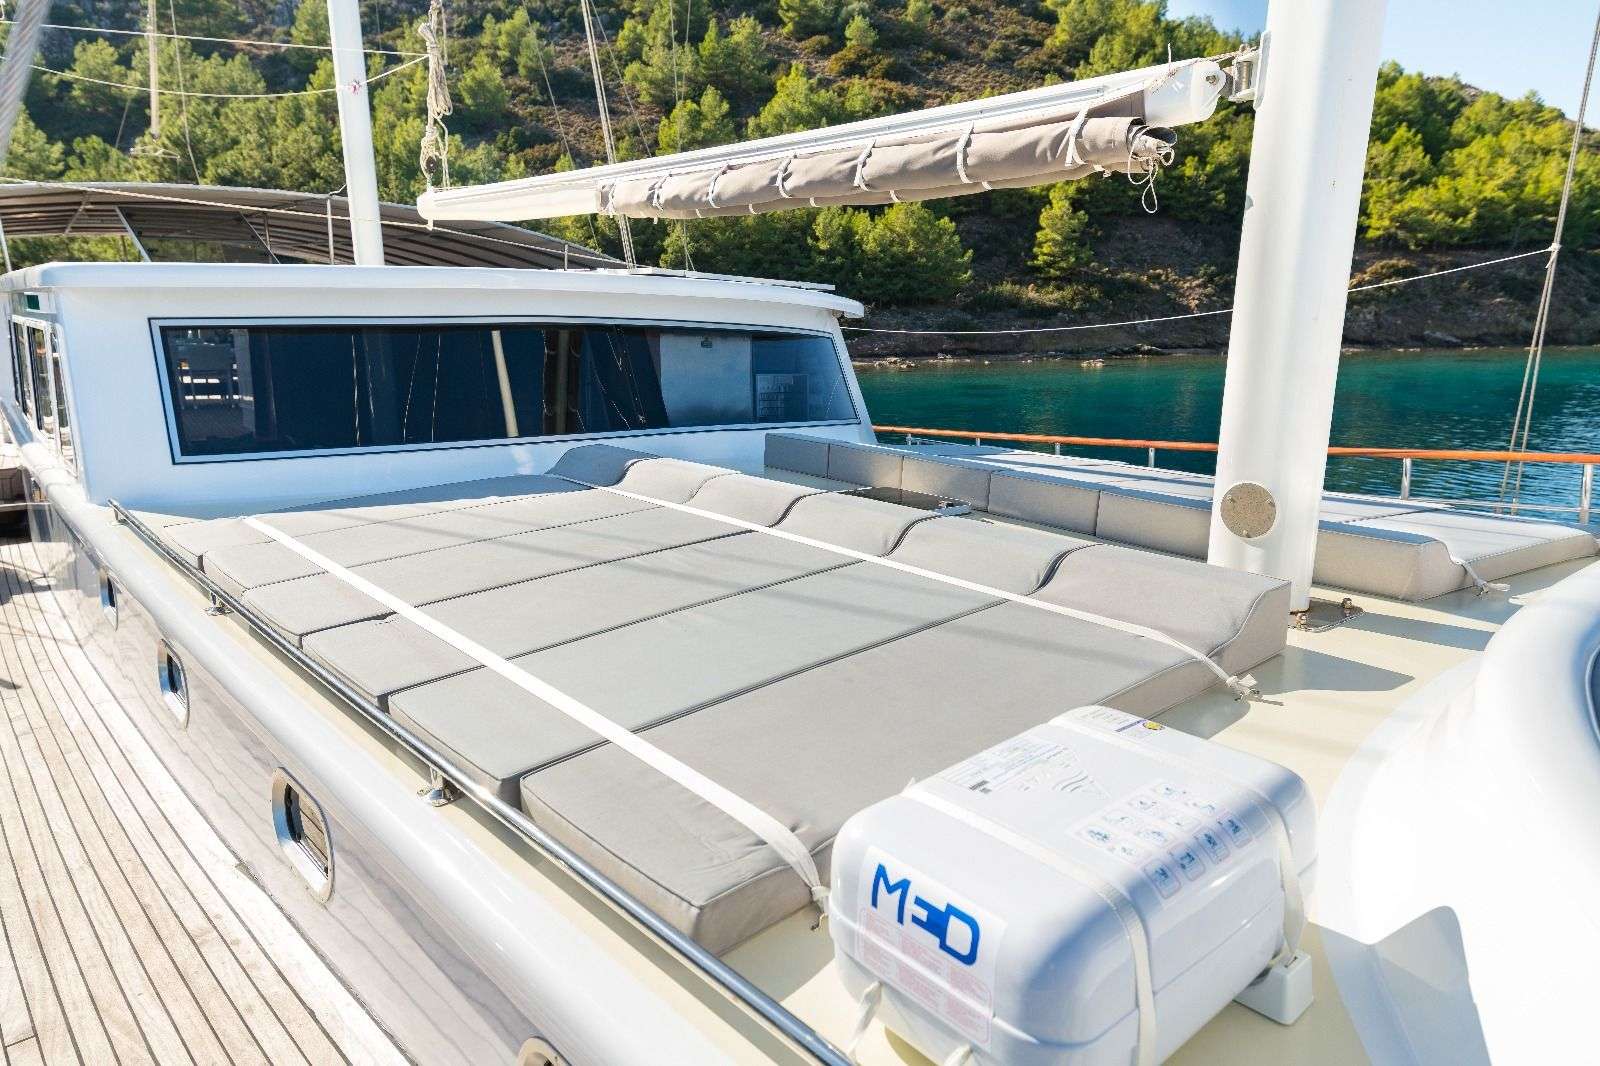 koray ege - Yacht Charter Zakynthos & Boat hire in Greece & Turkey 3